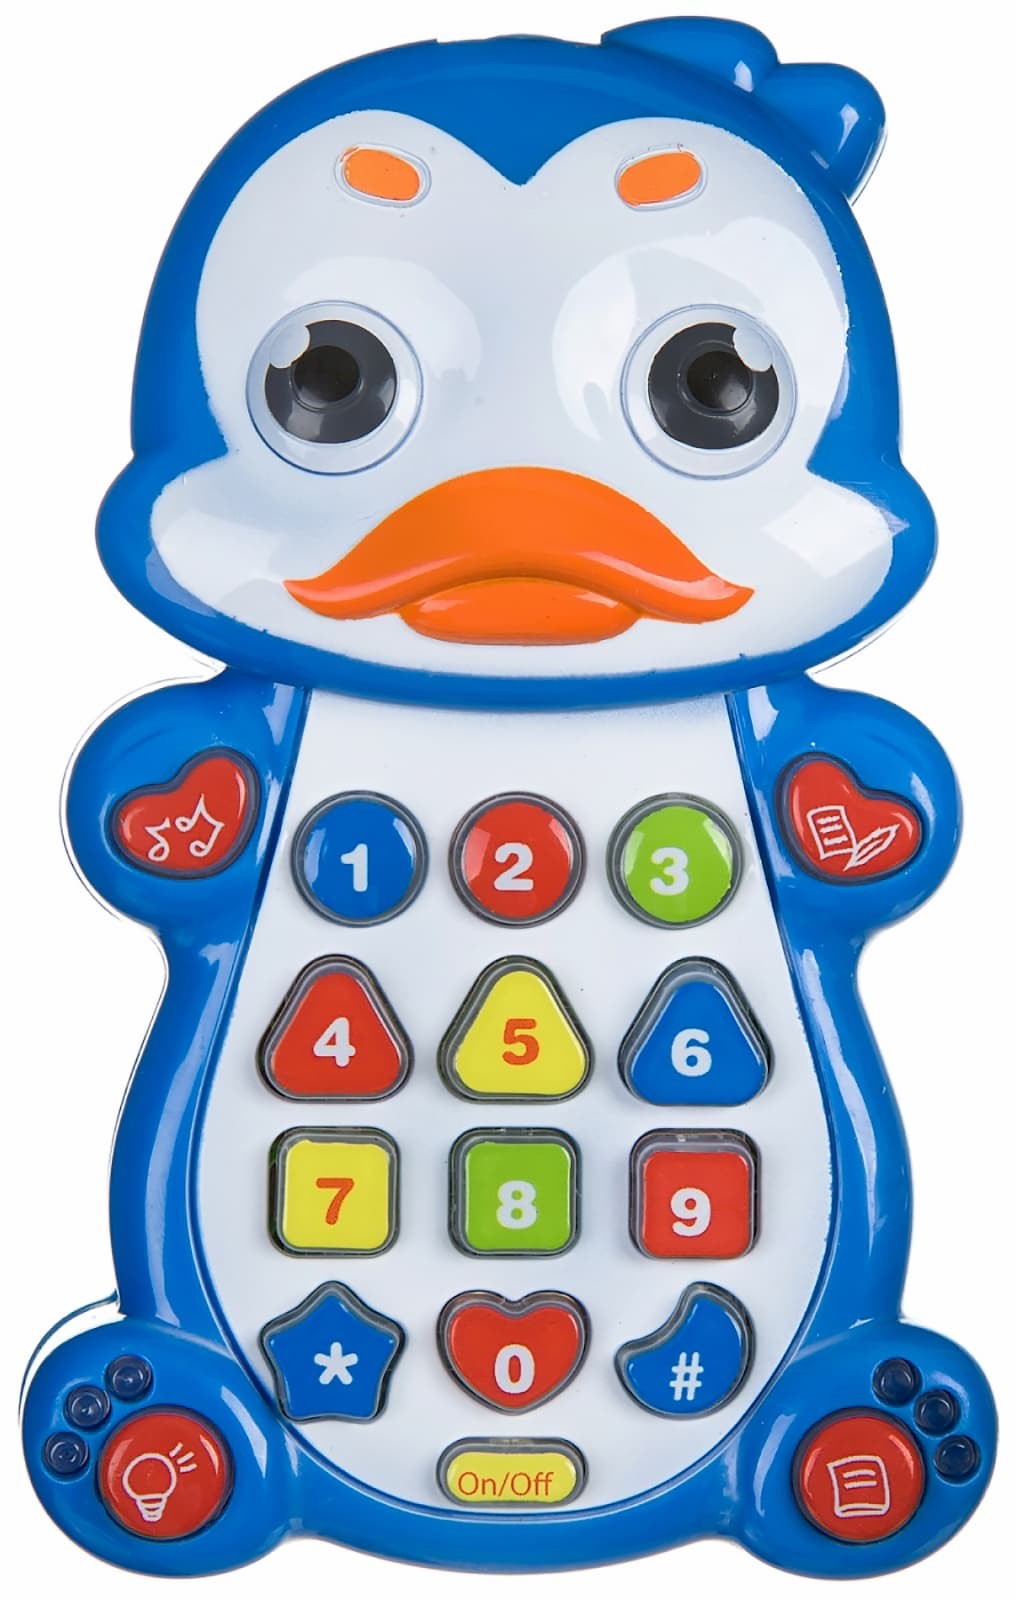 Обучающий детский планшет Play Smart «Детский смартфон: Пингвин» 7611 с цветной проекцией